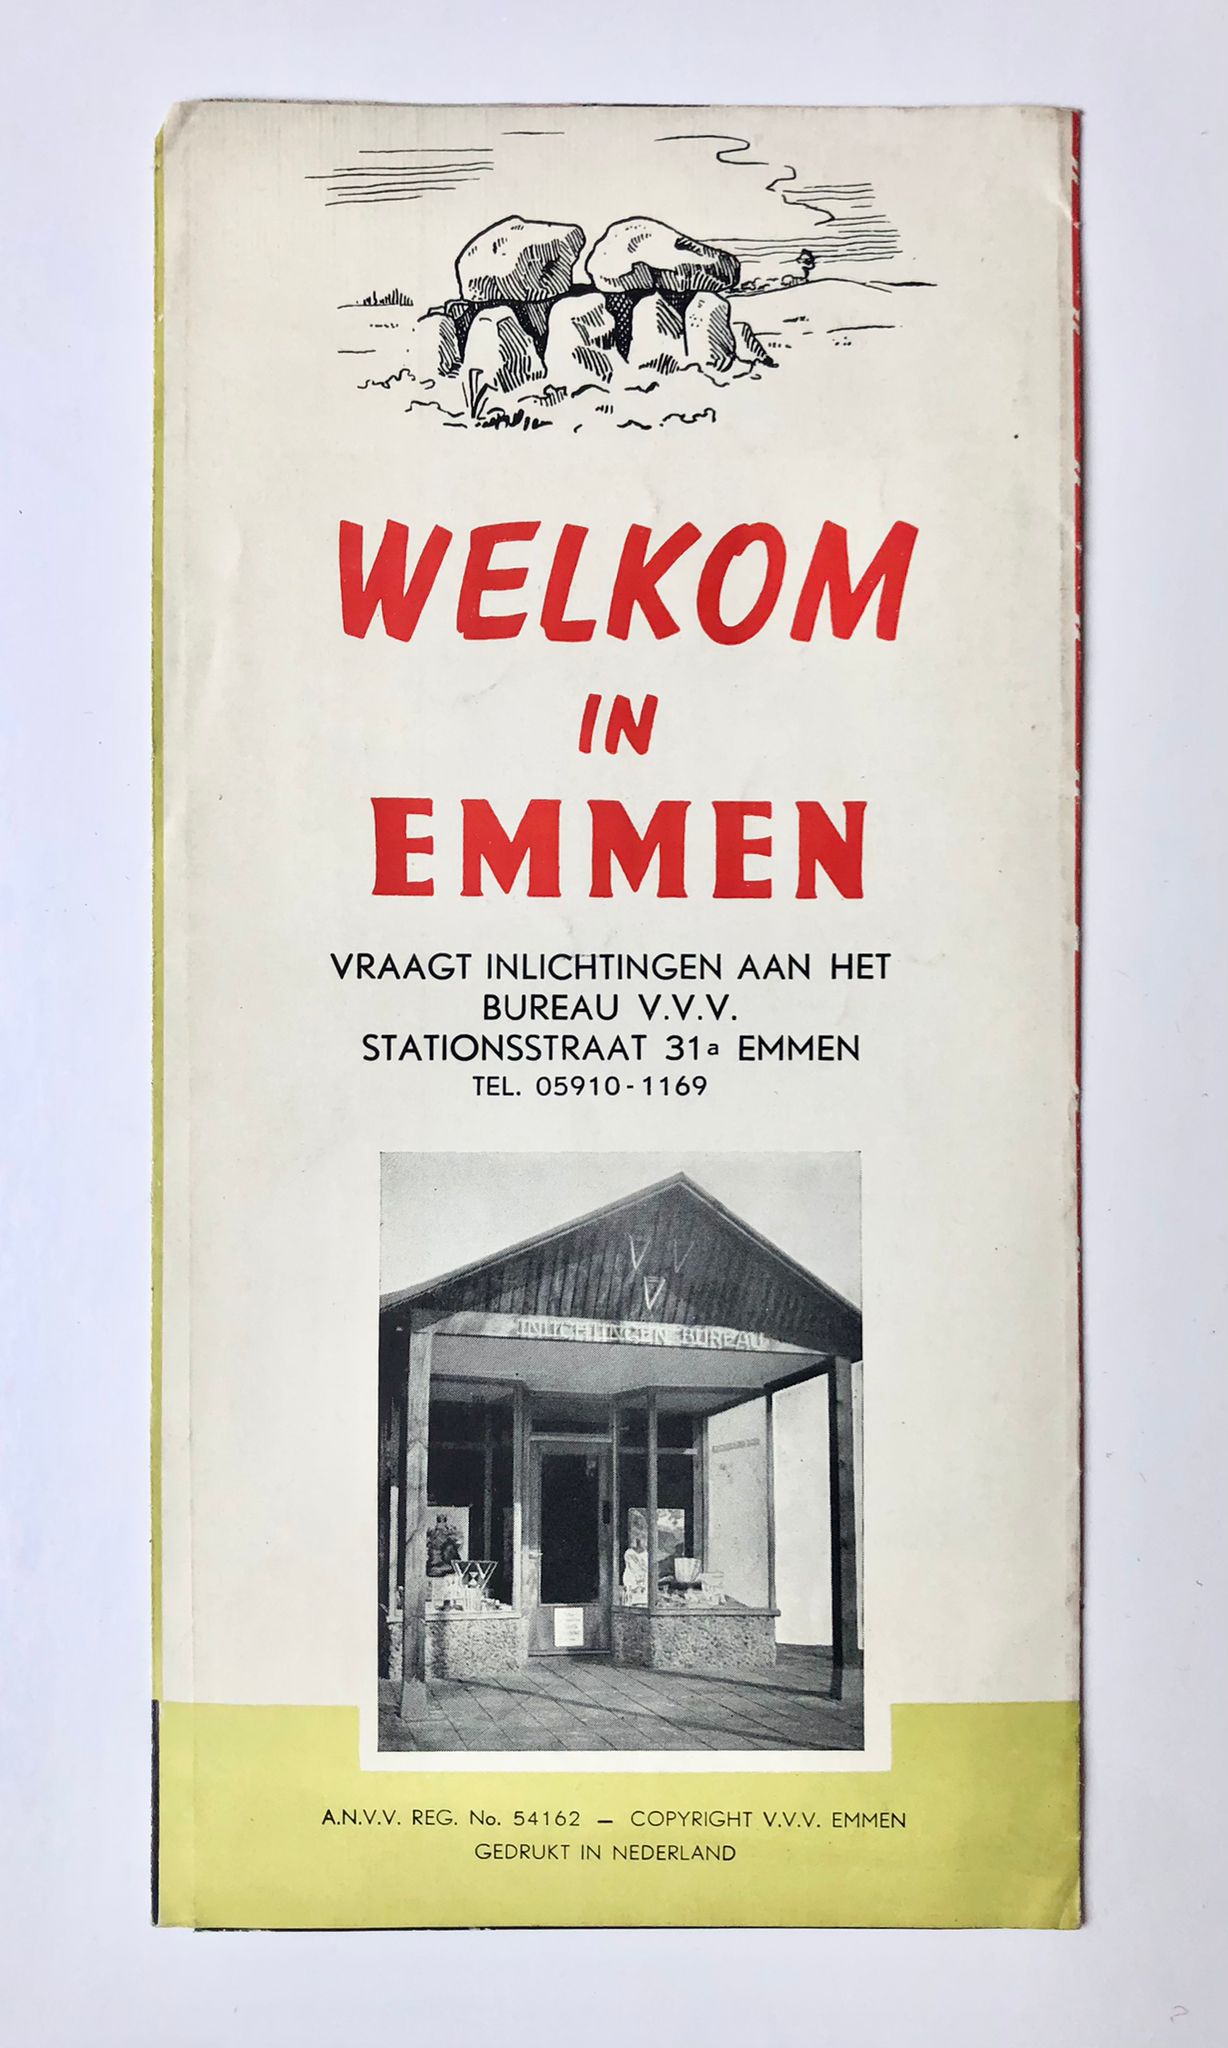 [Drenthe, Emmen] Emmen het mooie dorp op de Hondsrug, Welkom in Emmen, gedrukt in Nederland, 4 pp.